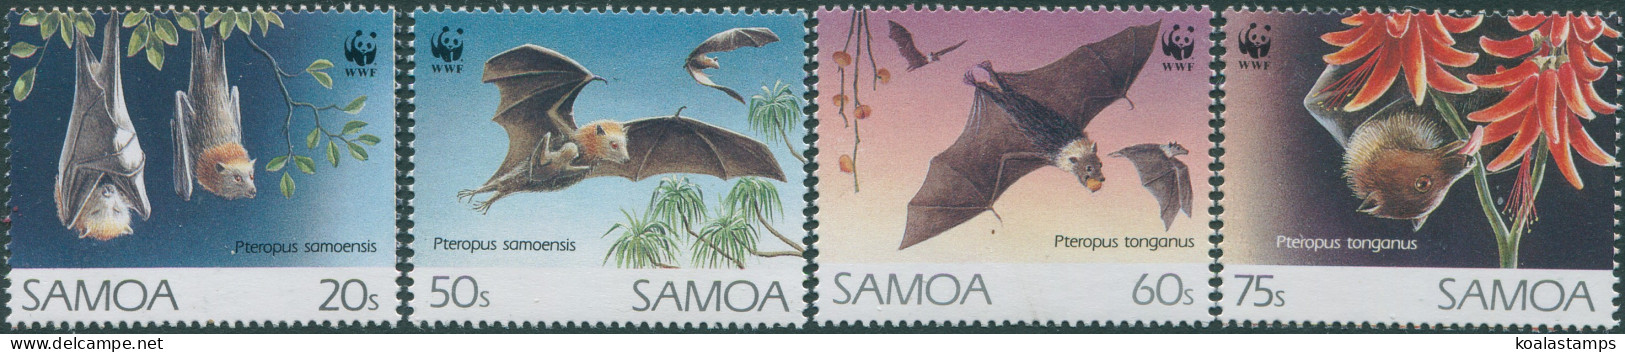 Samoa 1993 SG898-901 WWF Flying Foxes Set MNH - Samoa